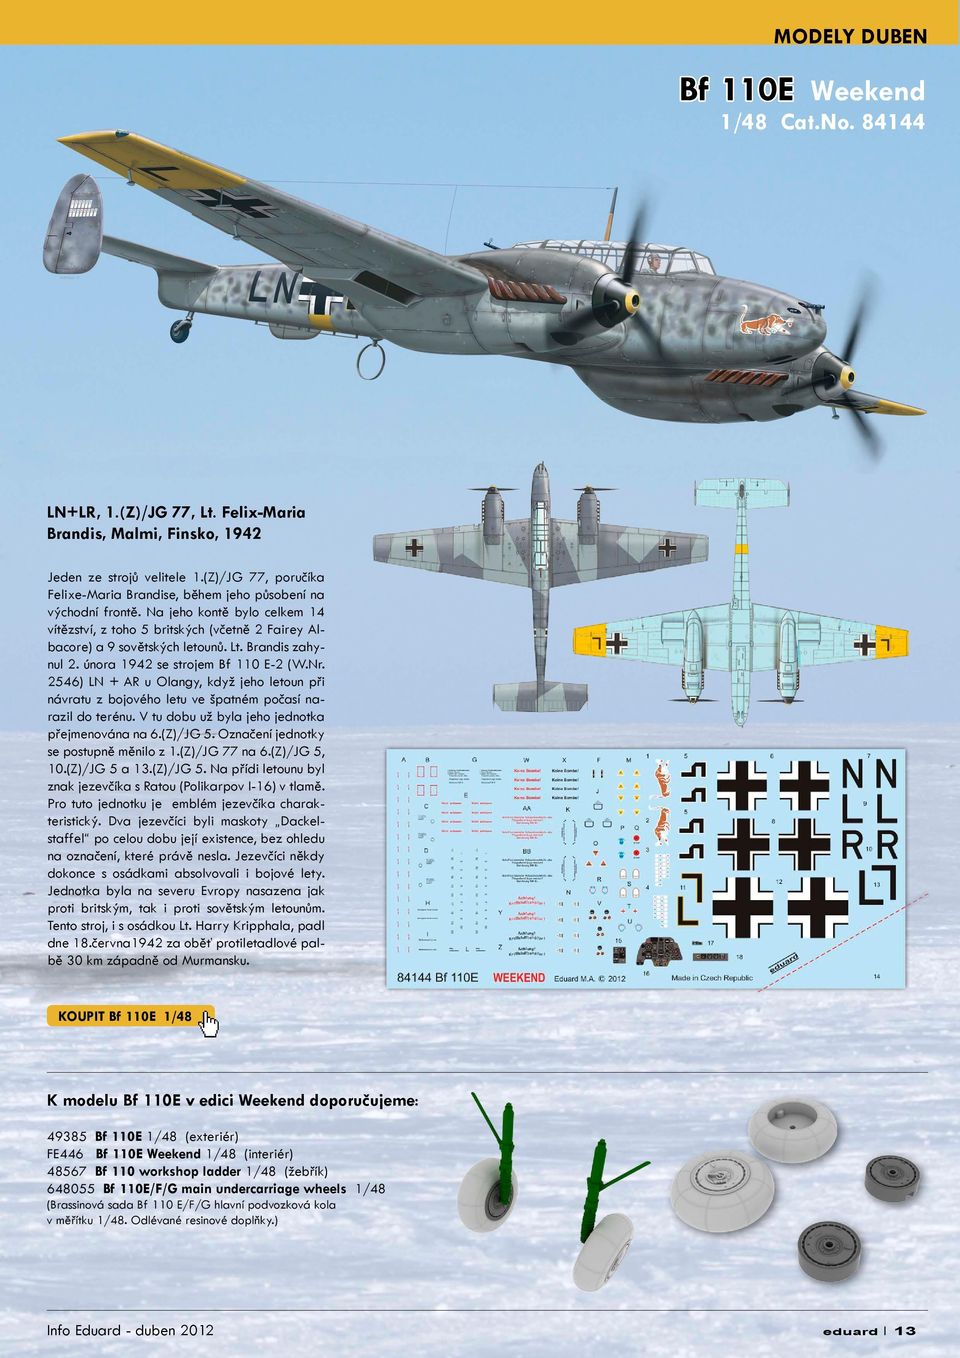 Brandis zahynul 2. února 1942 se strojem Bf 110 E-2 (W.Nr. 2546) LN + AR u Olangy, když jeho letoun při návratu z bojového letu ve špatném počasí narazil do terénu.